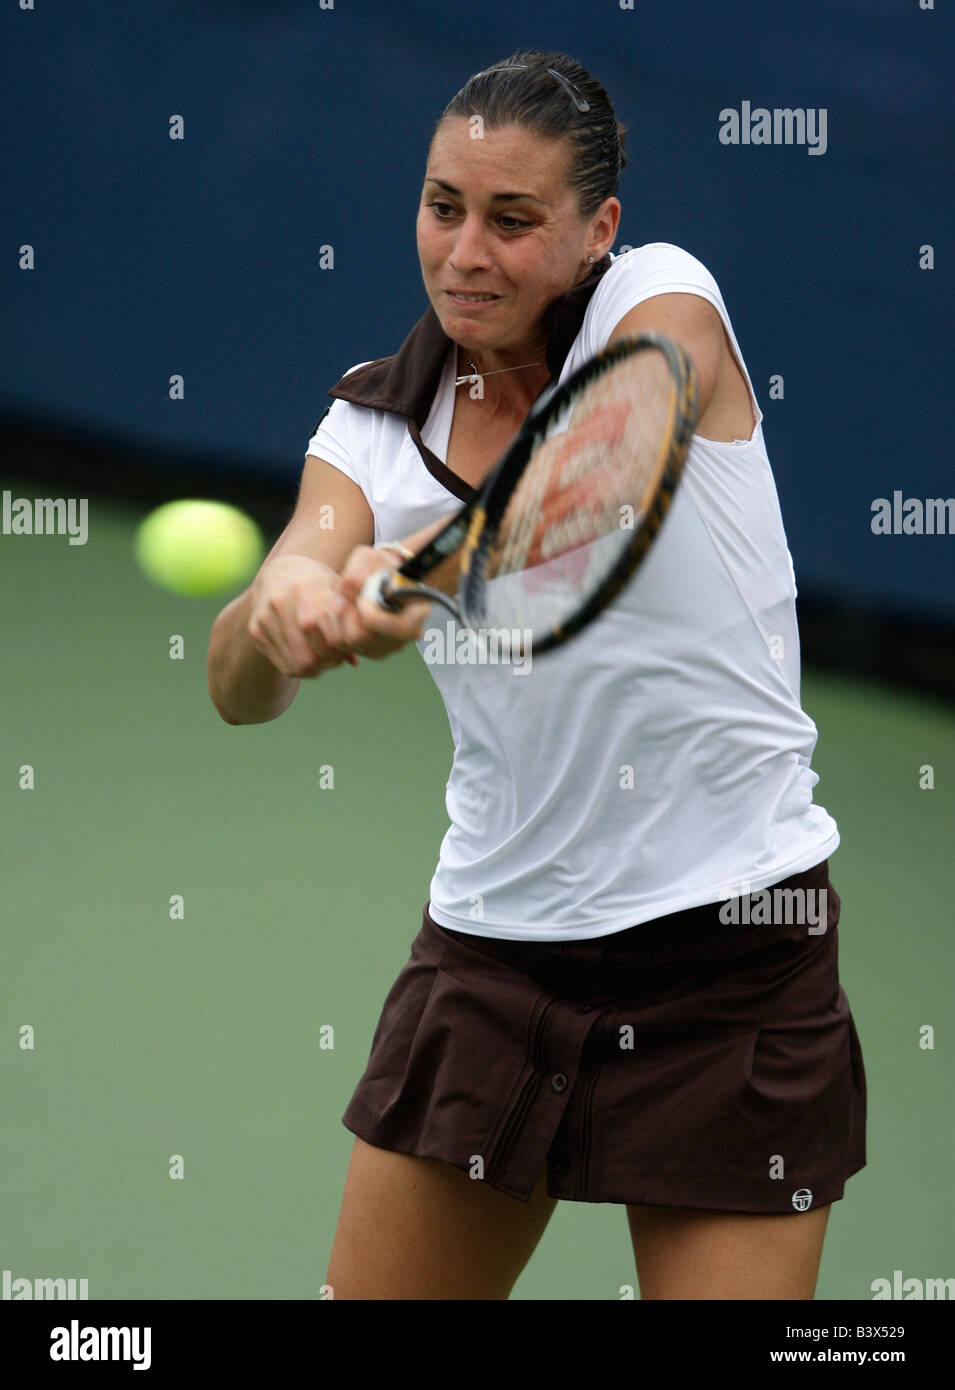 Tennis Pro Flavia Pennetta (ITA) en acción en el US Open. Foto de stock